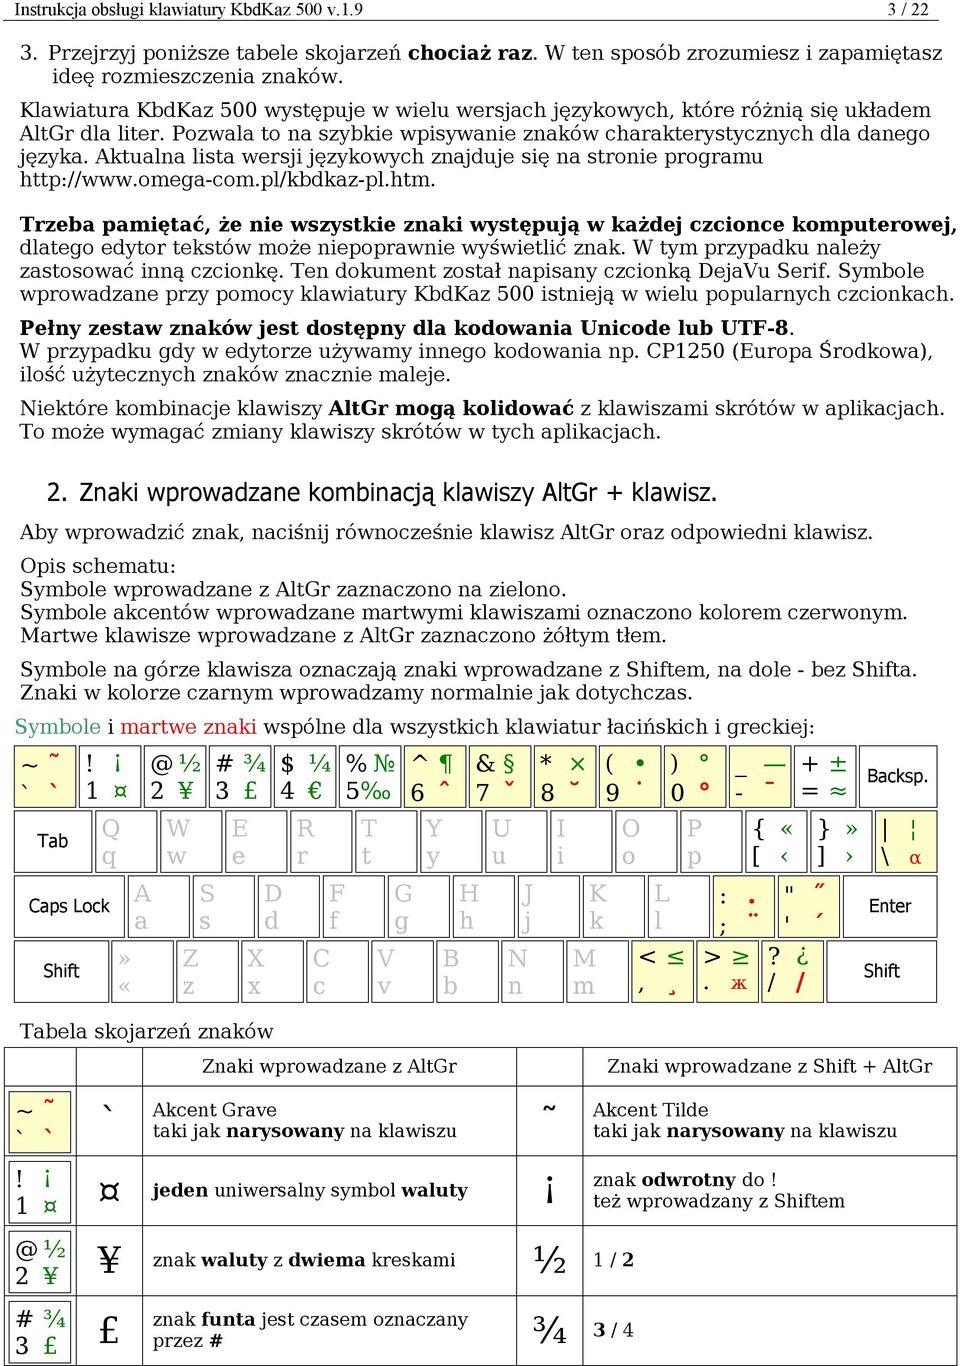 Aktualna lista wersji językowych znajduje się na stronie programu http://www.omega-com.pl/kbdkaz-pl.htm.